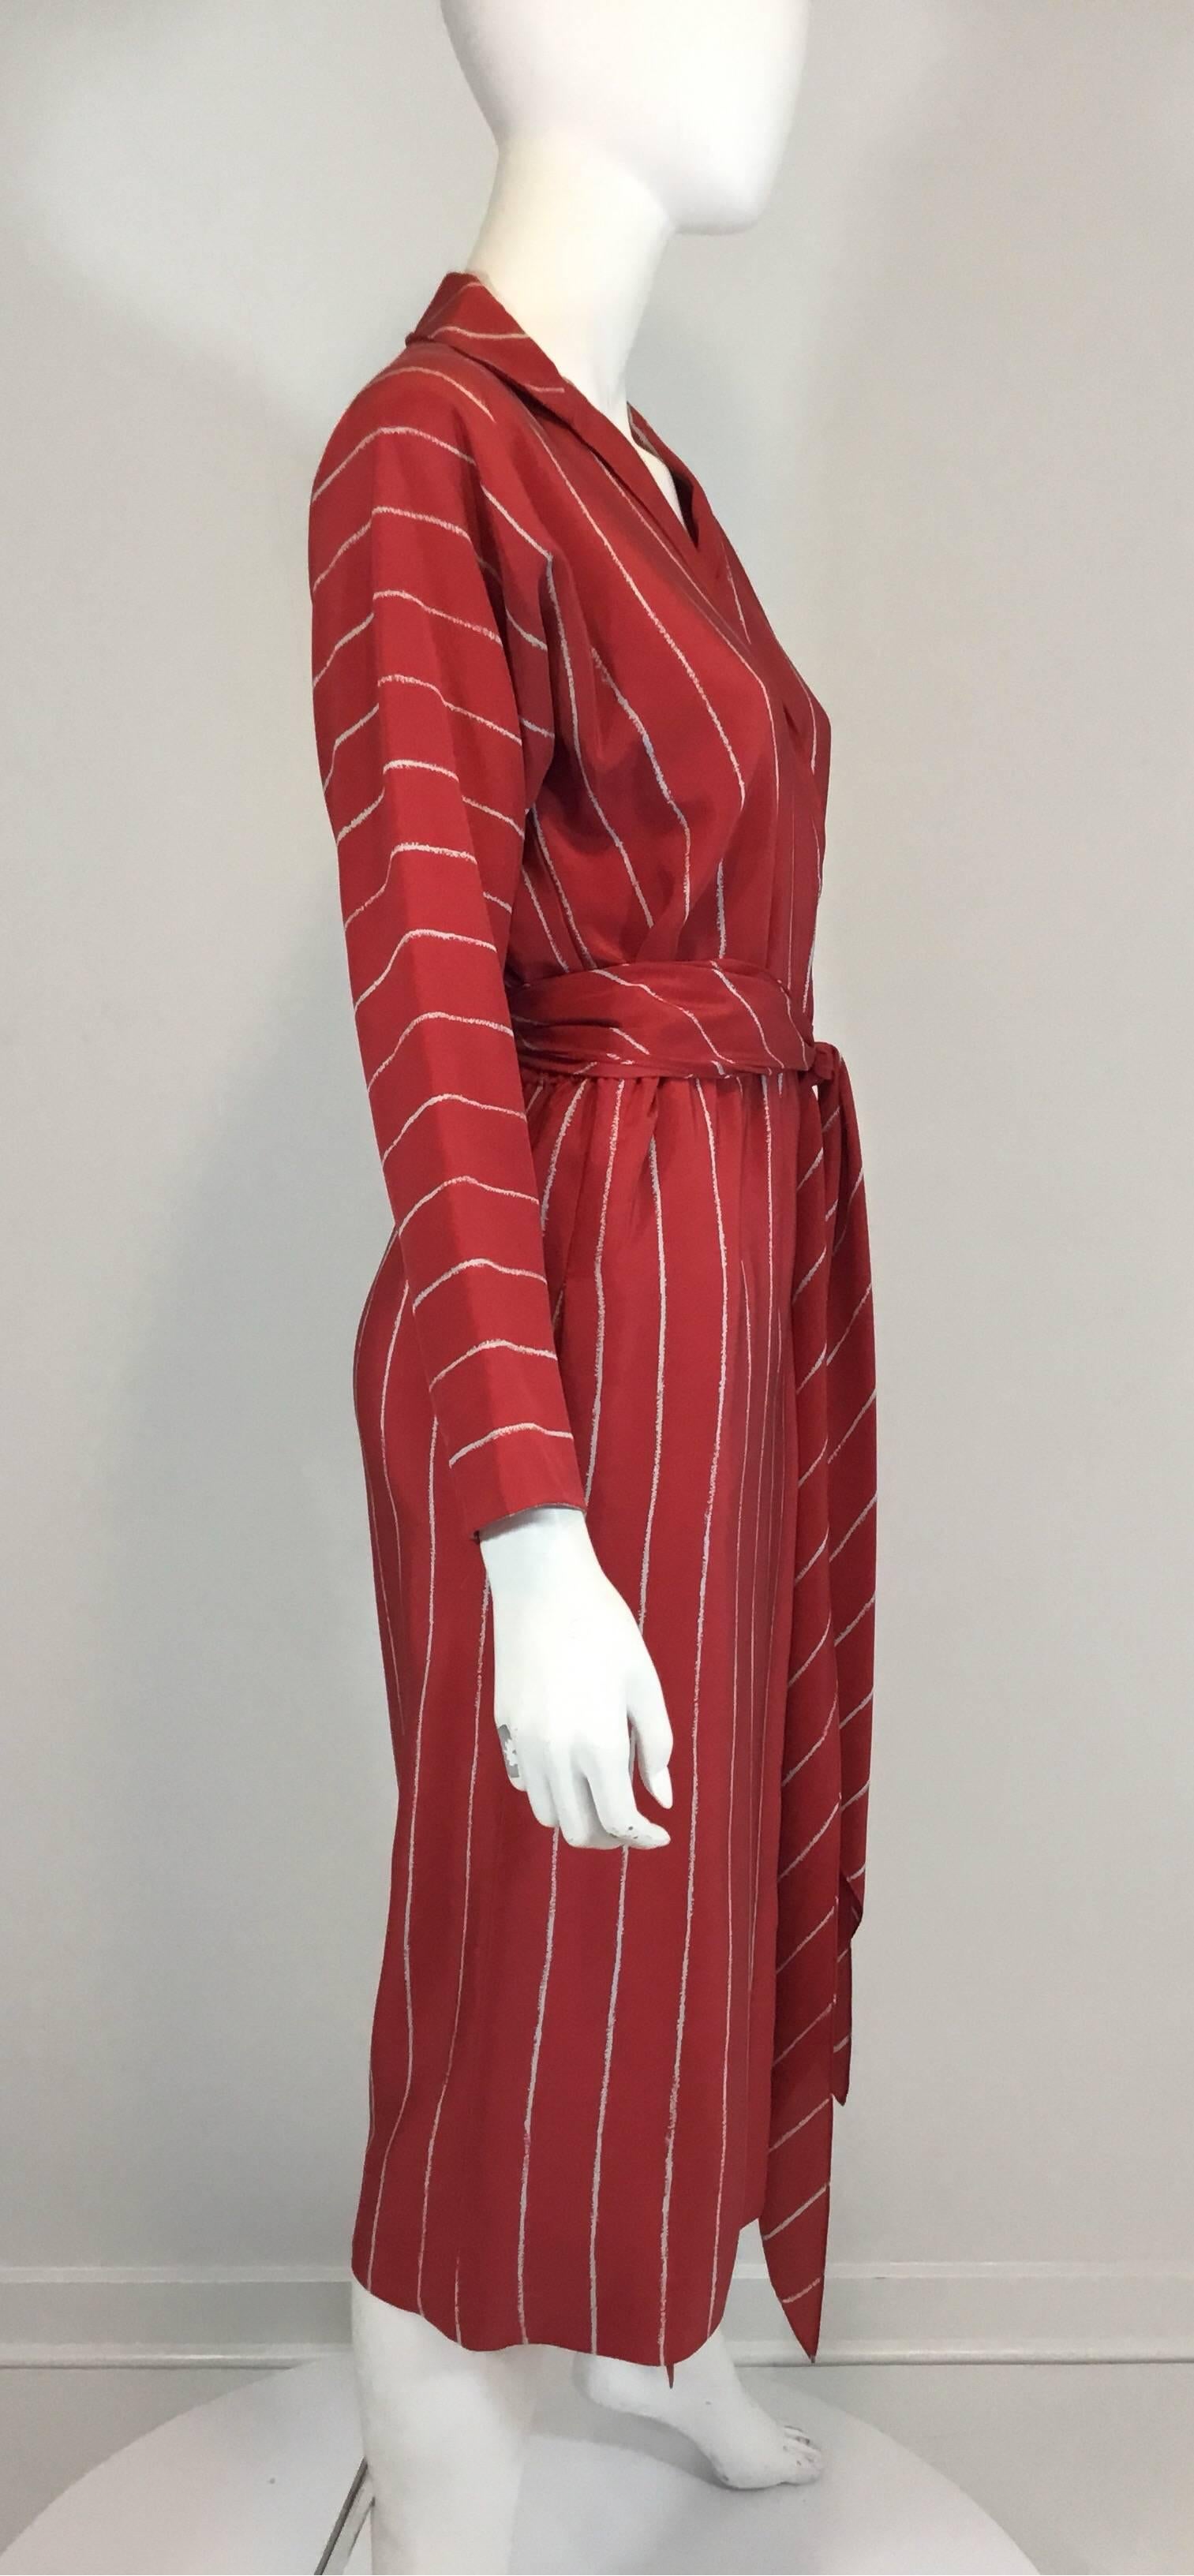 Vintage Halston Seiden-Wickelkleid mit durchgehendem rot-weißem Streifenmuster, Haken- und Ösen- sowie Druckknopfverschluss an der Taille und optionalem Taillengürtel/Schärpe. Das Kleid ist komplett gefüttert und hat Schlupftaschen an der Taille.